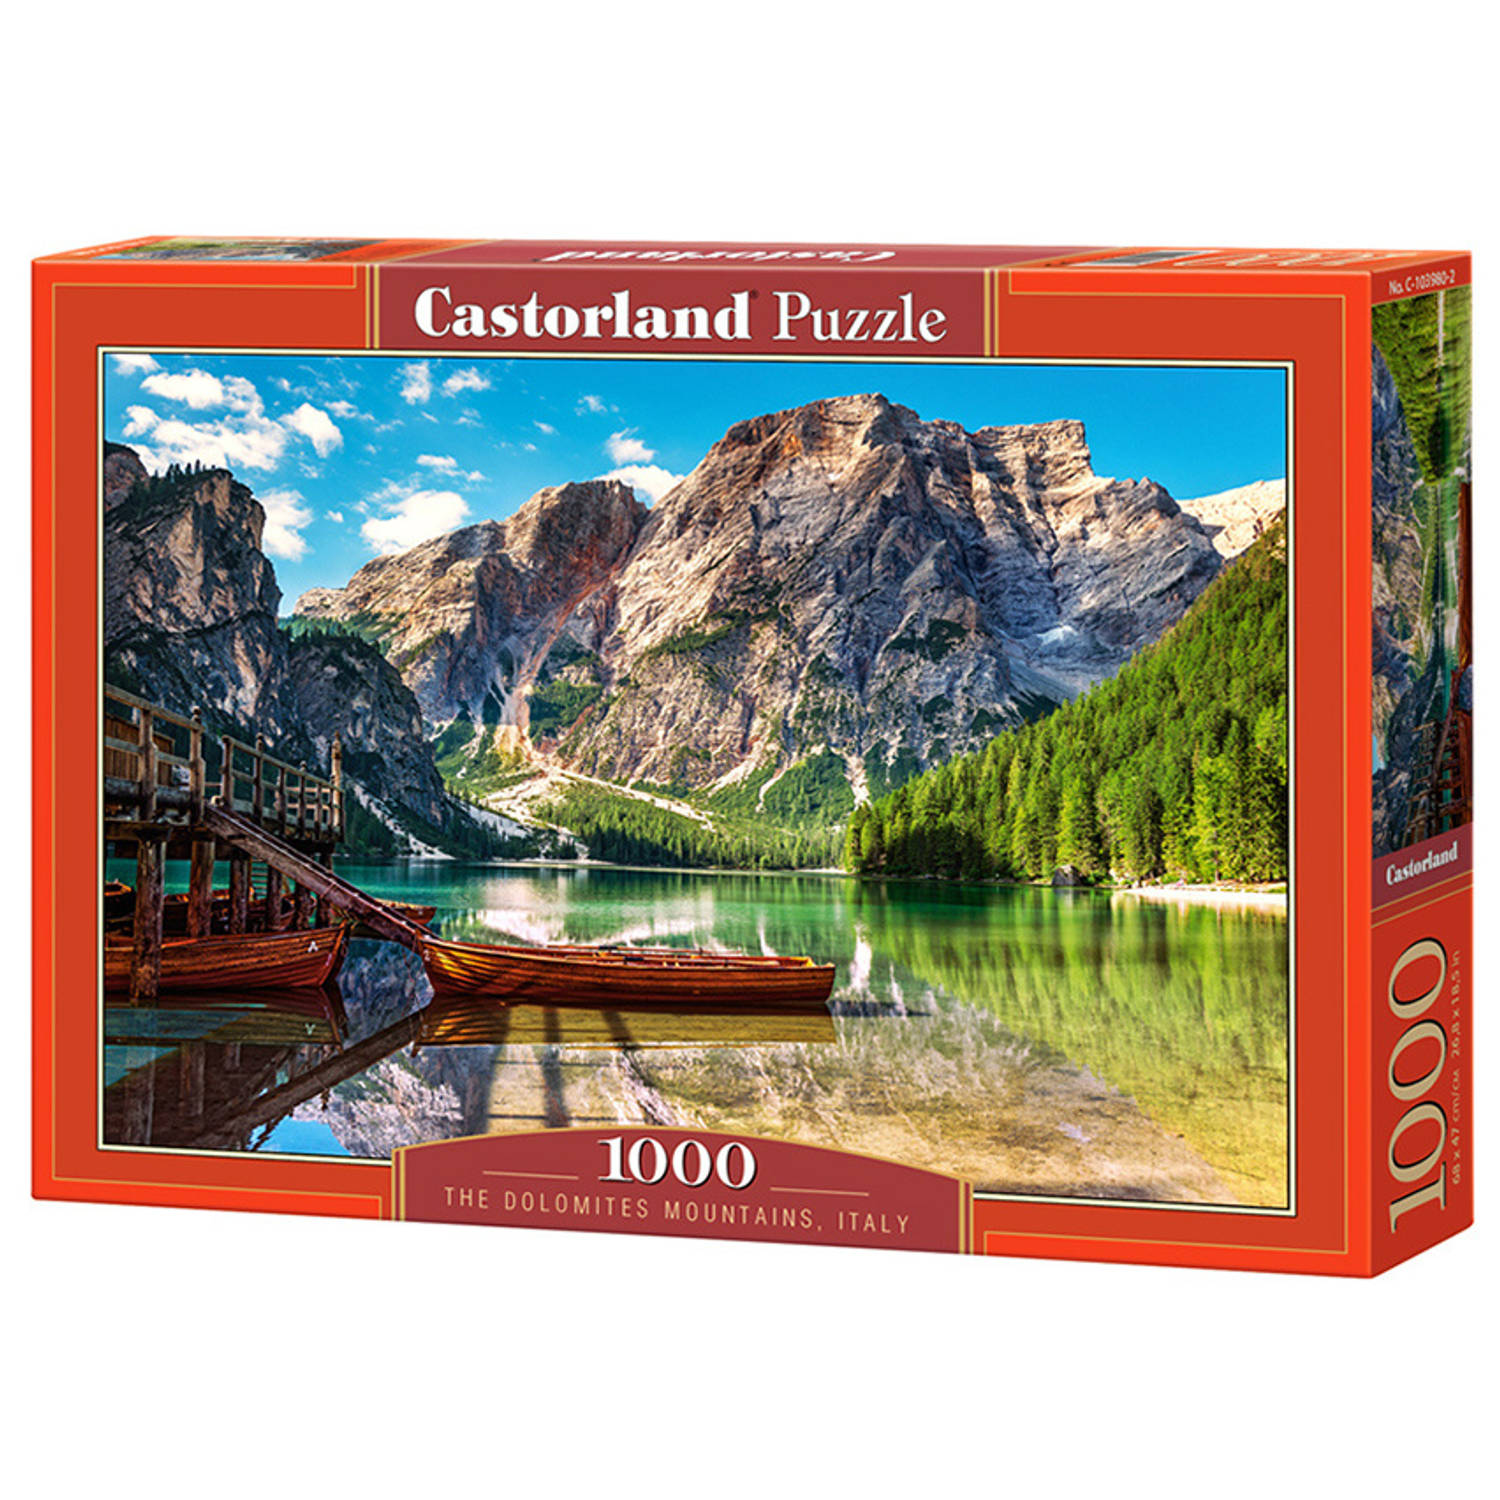 Castorland legpuzzel The Dolomites Mountains Italy 1000 stukjes